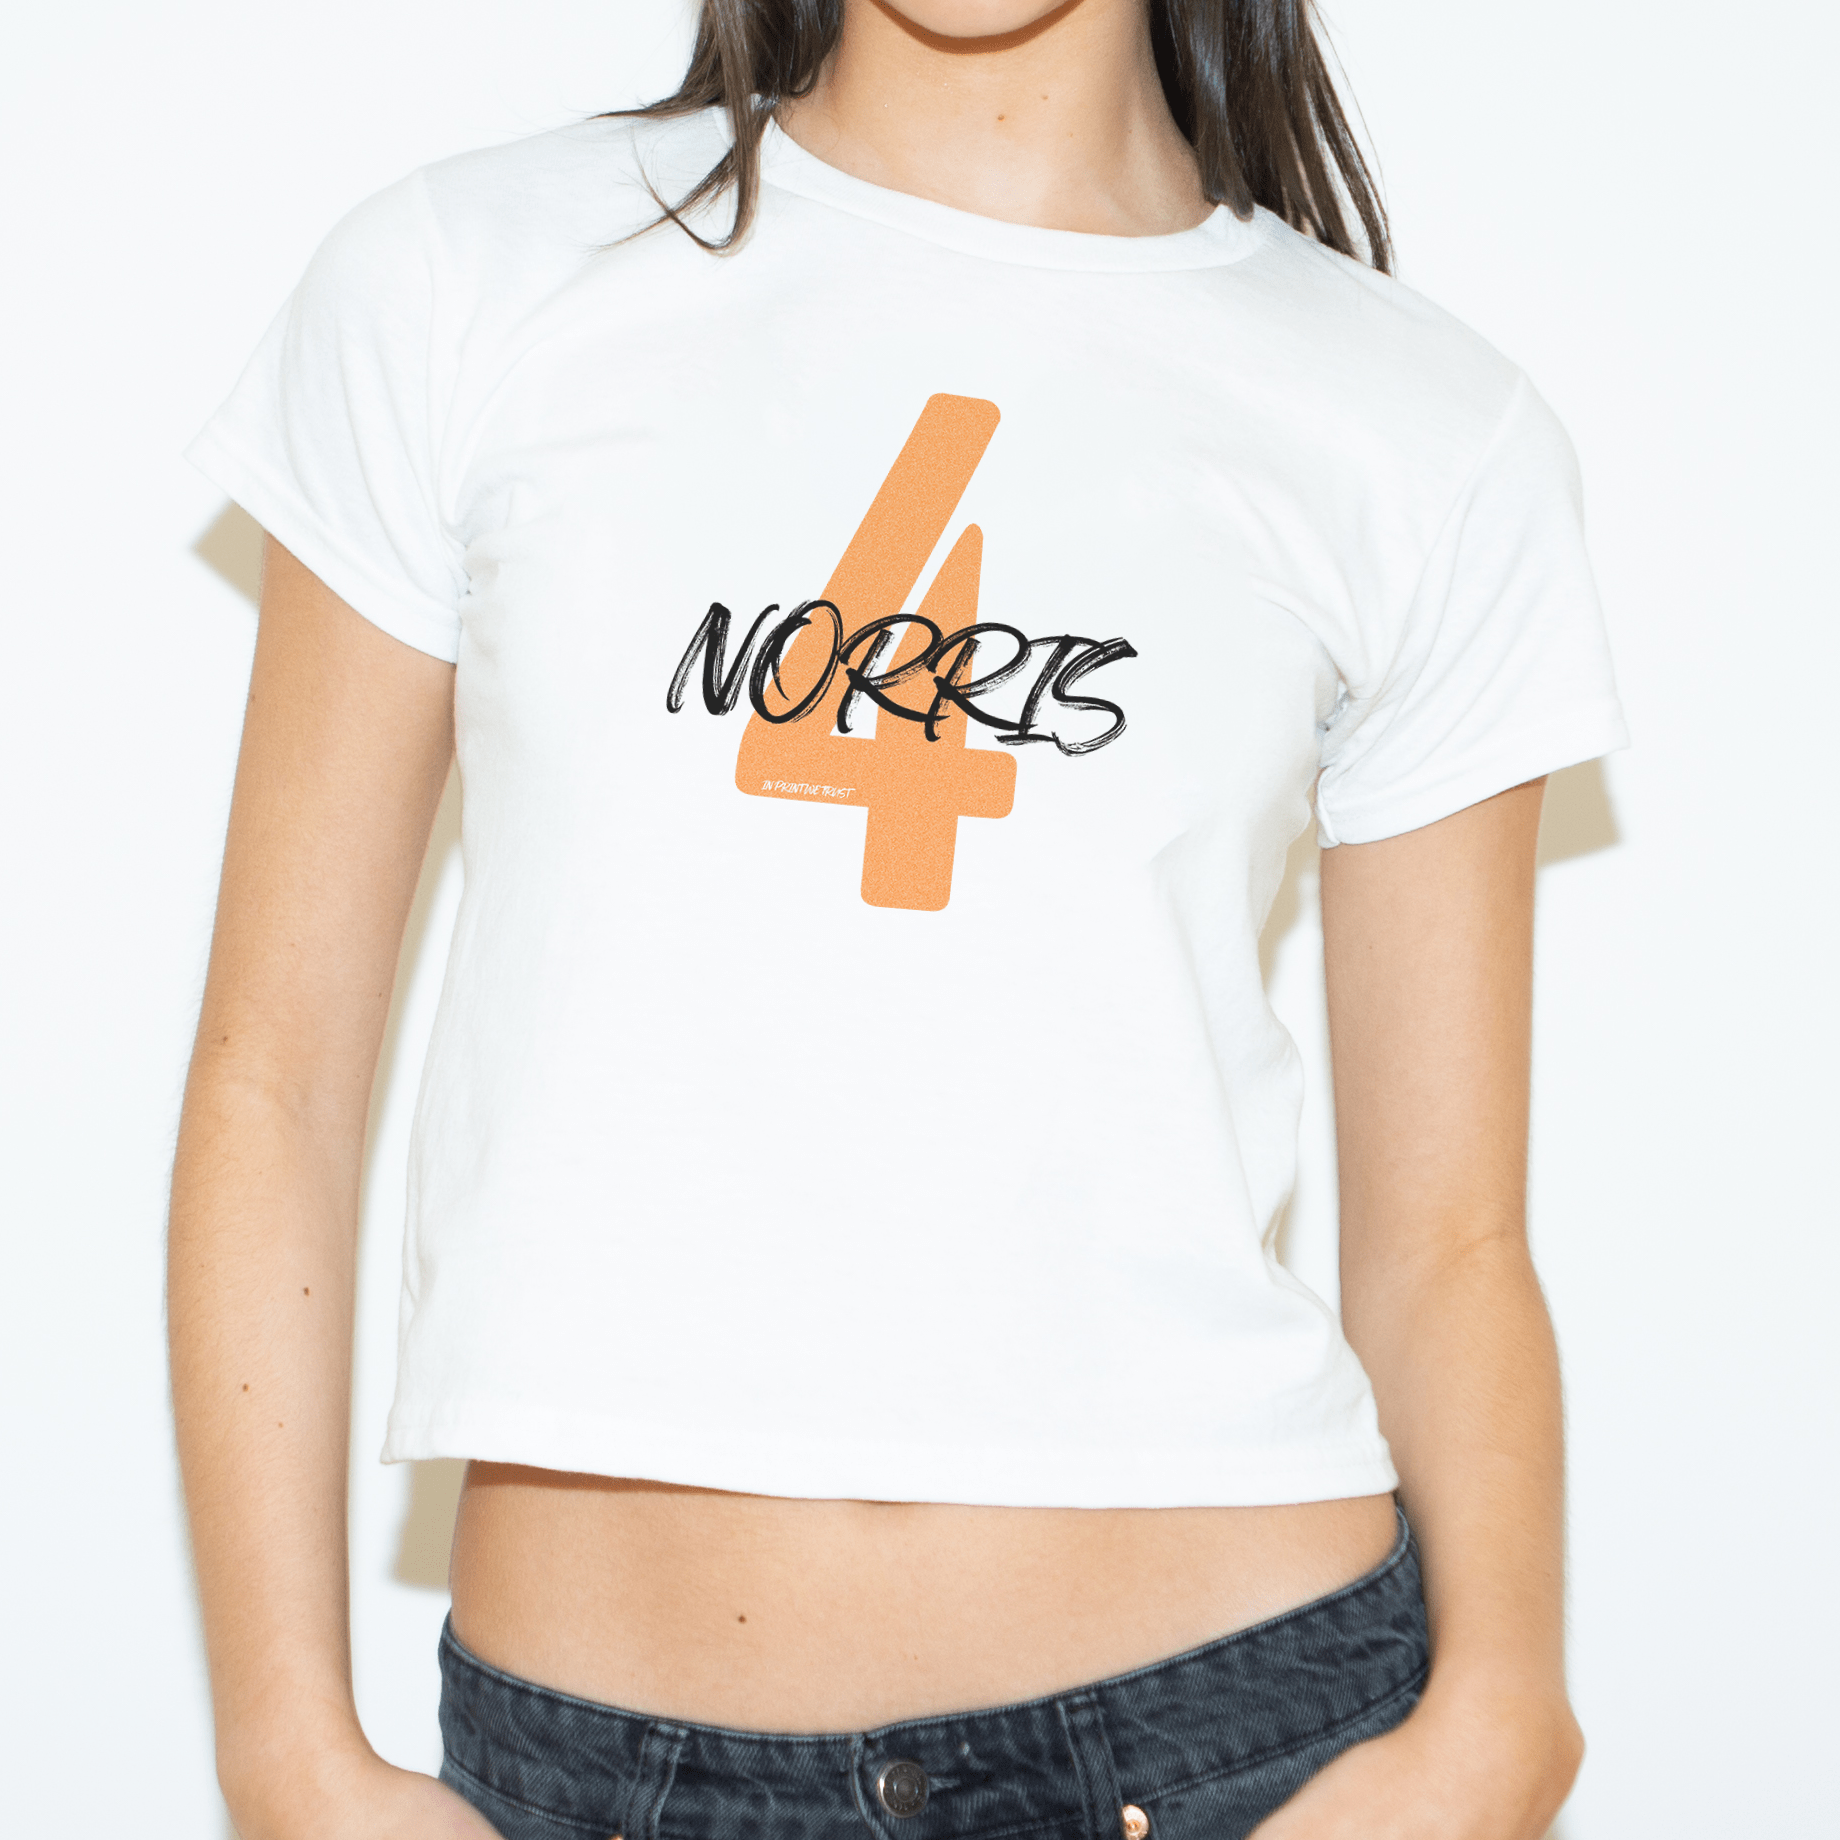 'Norris 4' baby tee - In Print We Trust